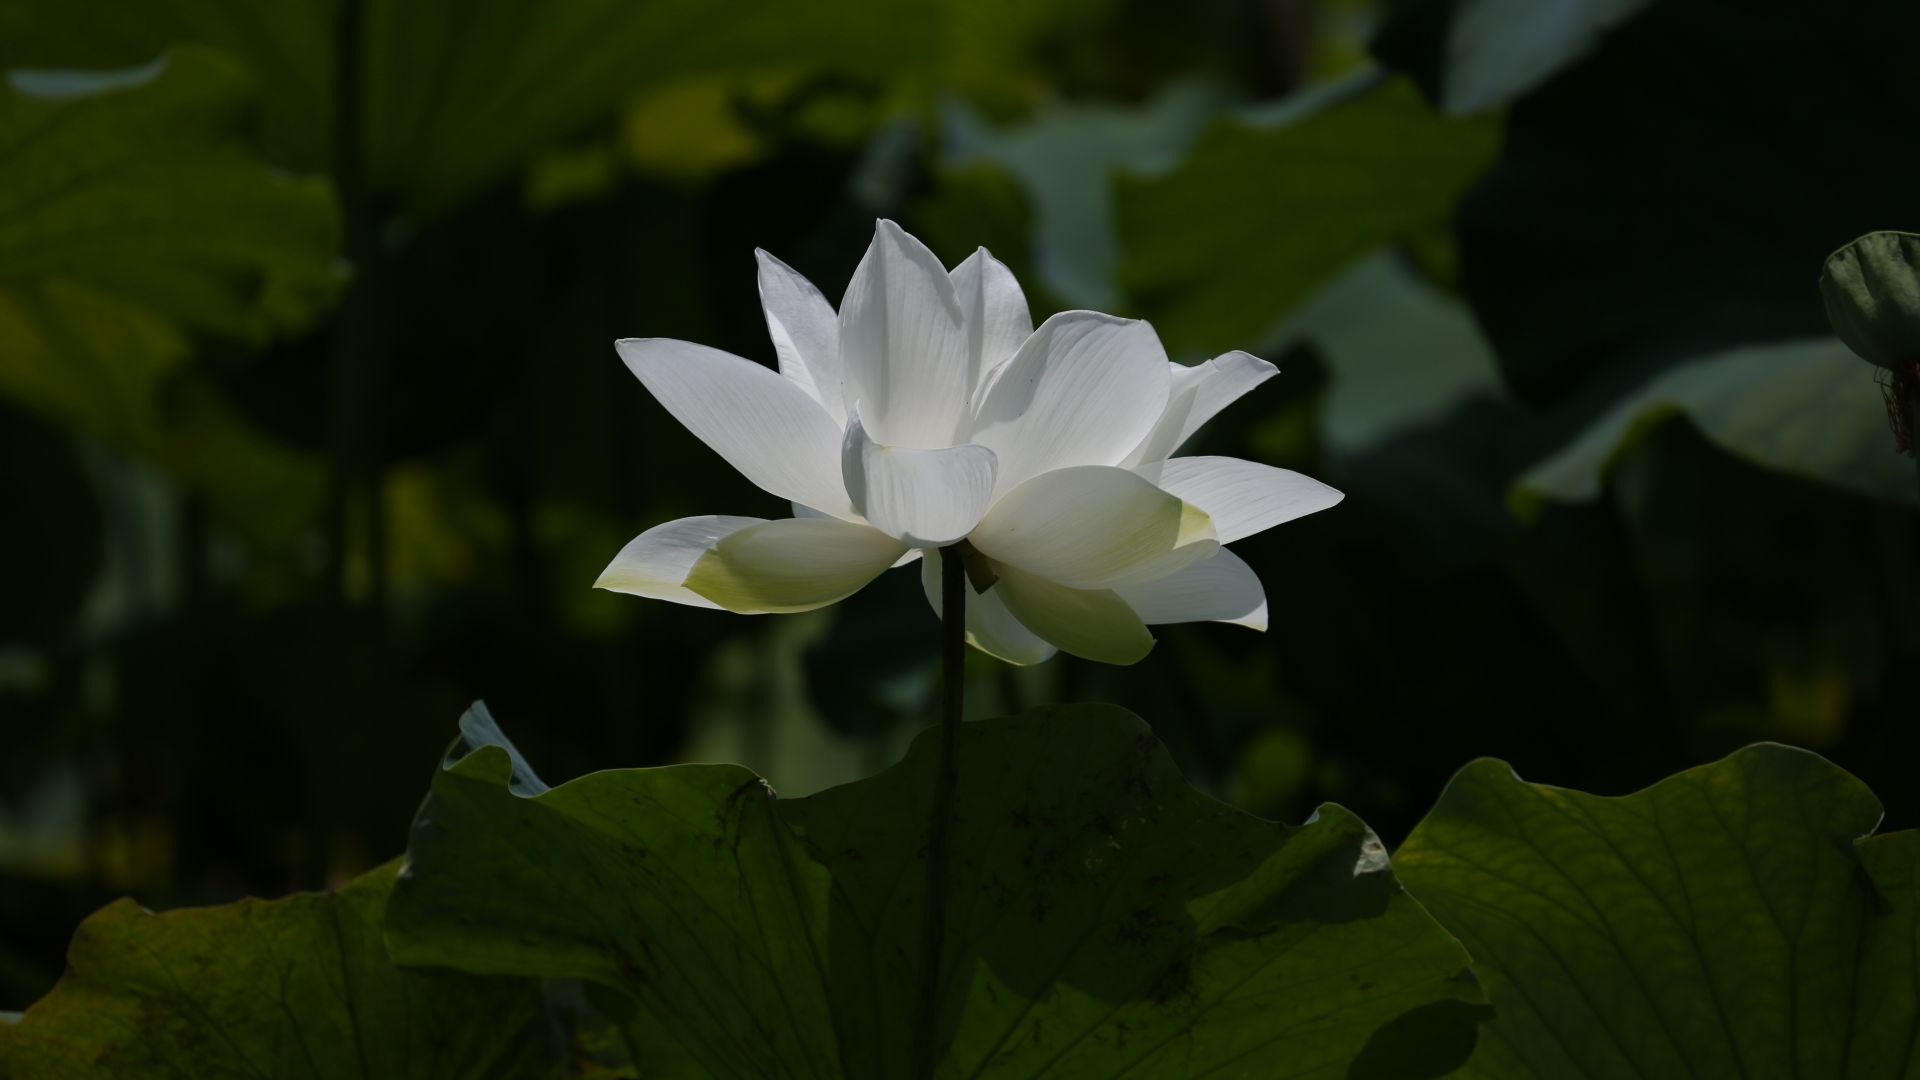 Sen Trắng là một loài hoa đẹp với sắc trắng tinh khiết và hương thơm dễ chịu. Với tác phẩm nghệ thuật liên quan đến Sen Trắng, bạn sẽ được chiêm ngưỡng vẻ đẹp tuyệt vời của loài sen này, cũng như cảm nhận được sức sống và sự thanh khiết mà chúng mang lại.